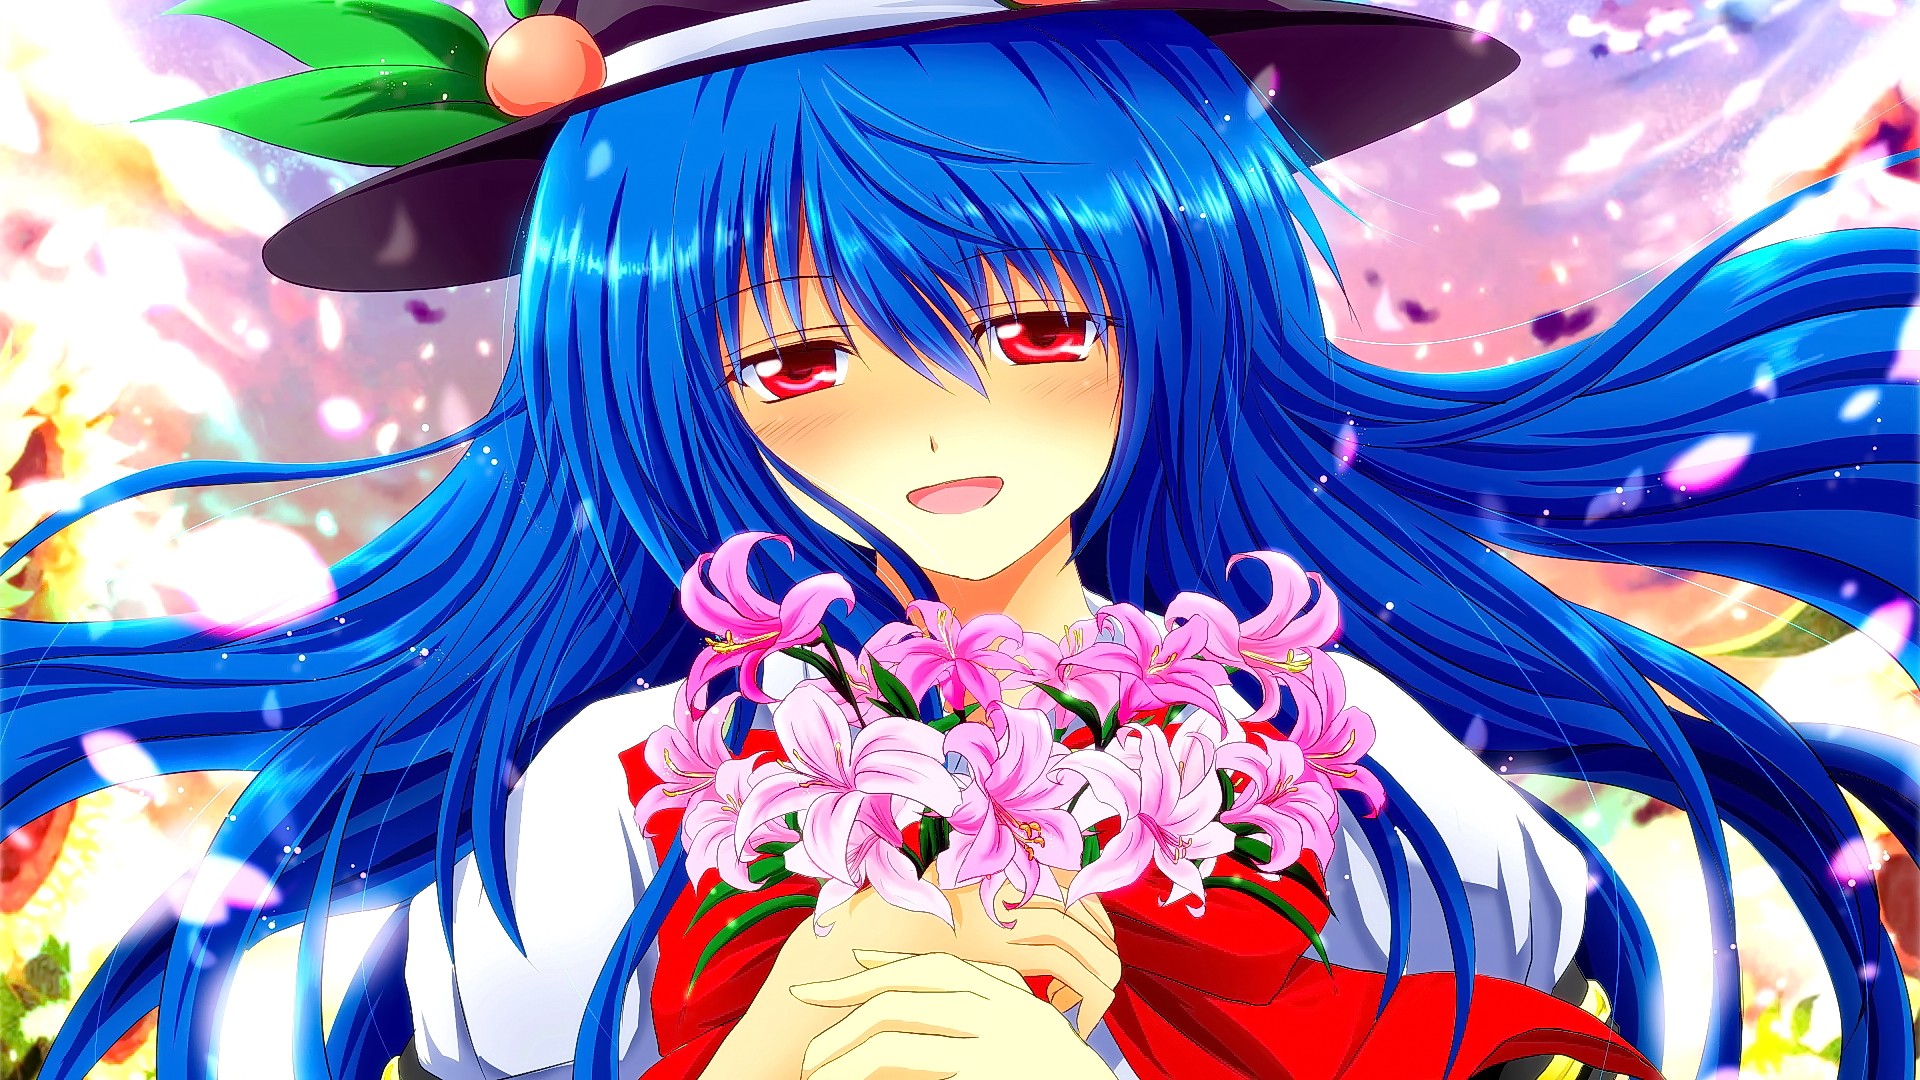 Anime Anime Girls Blue Hair Long Hair Hat Red Eyes Open Mouth Smiling Touhou Hinanawi Tenshi 1920x1080